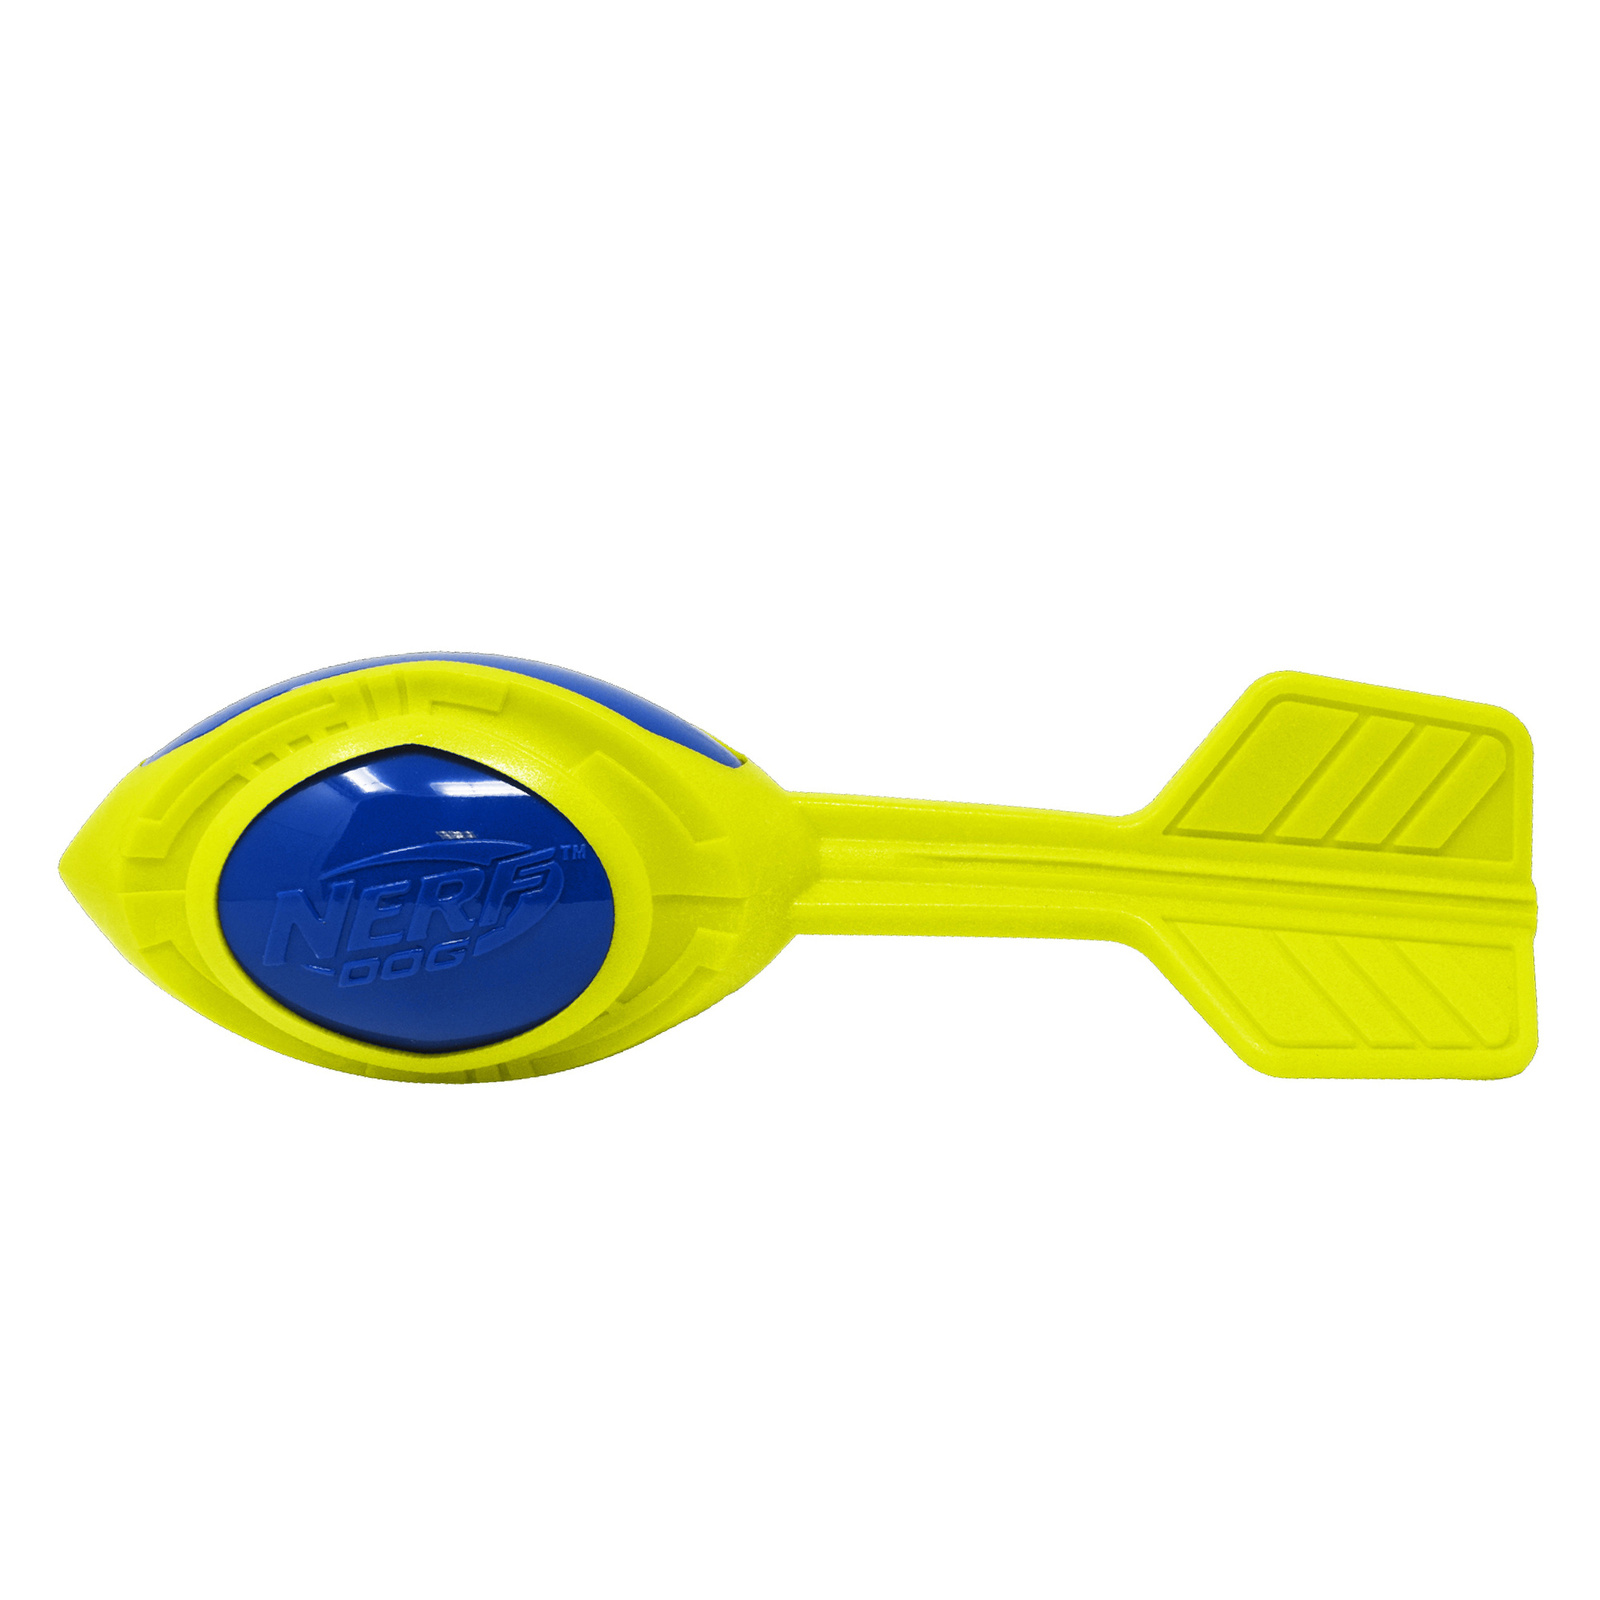 Nerf Nerf снаряд из вспененной резины и термопластичной резины, 30 см (серия Мегатон), (синий/зеленый) (290 г) nerf dog мяч для регби из термопластичной резины 18 см серия мегатон синий оранжевый